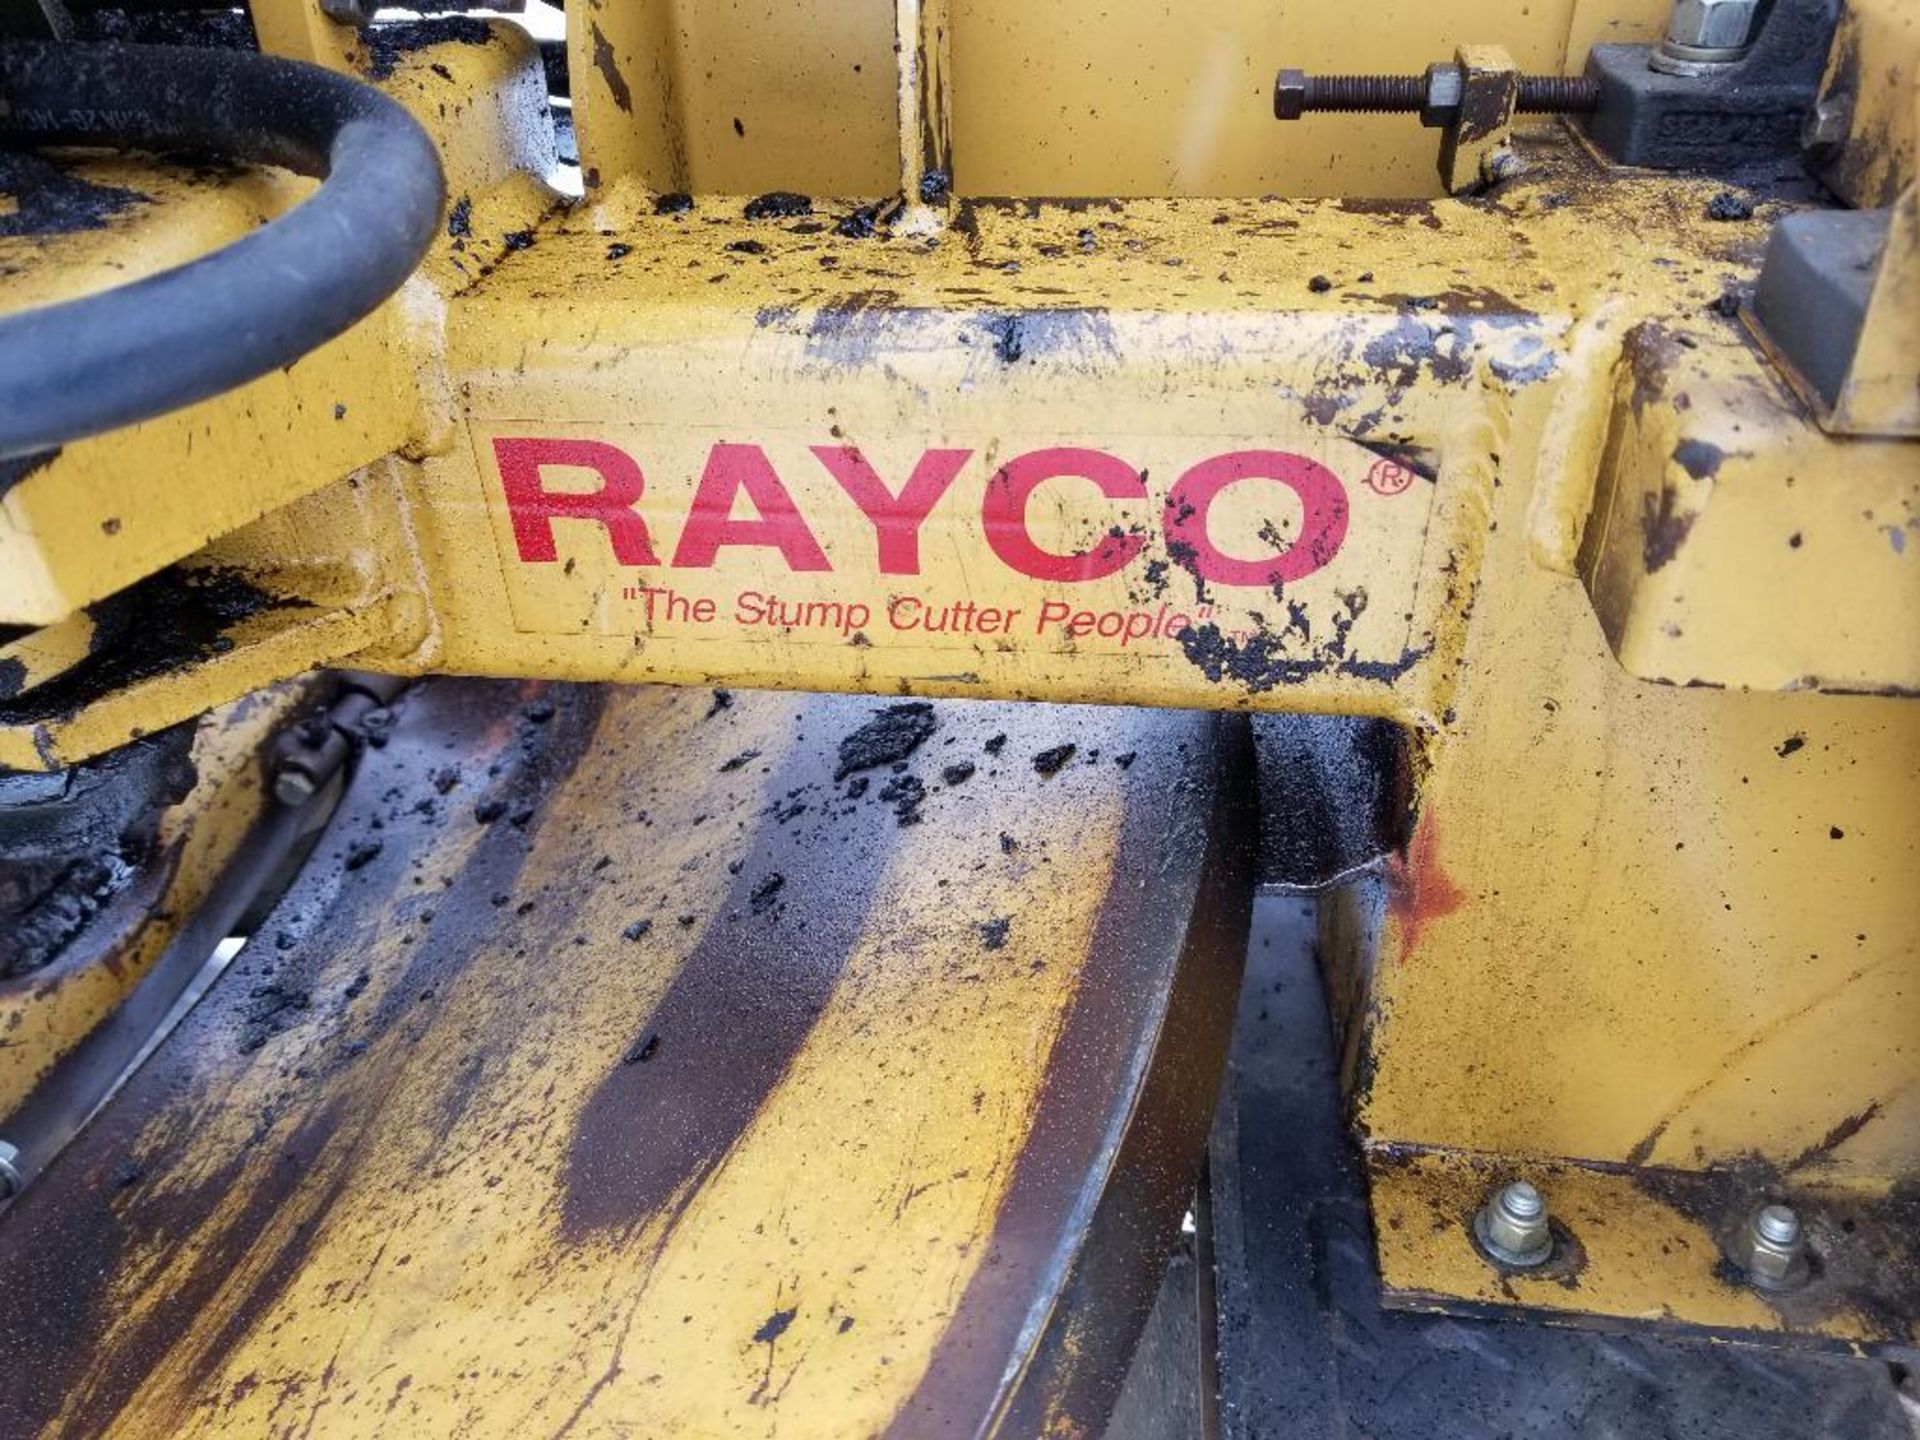 Rayco stump grinder. RG1625 super Jr. Kohler motor. 1320 hours showing on hour meter. - Image 2 of 19